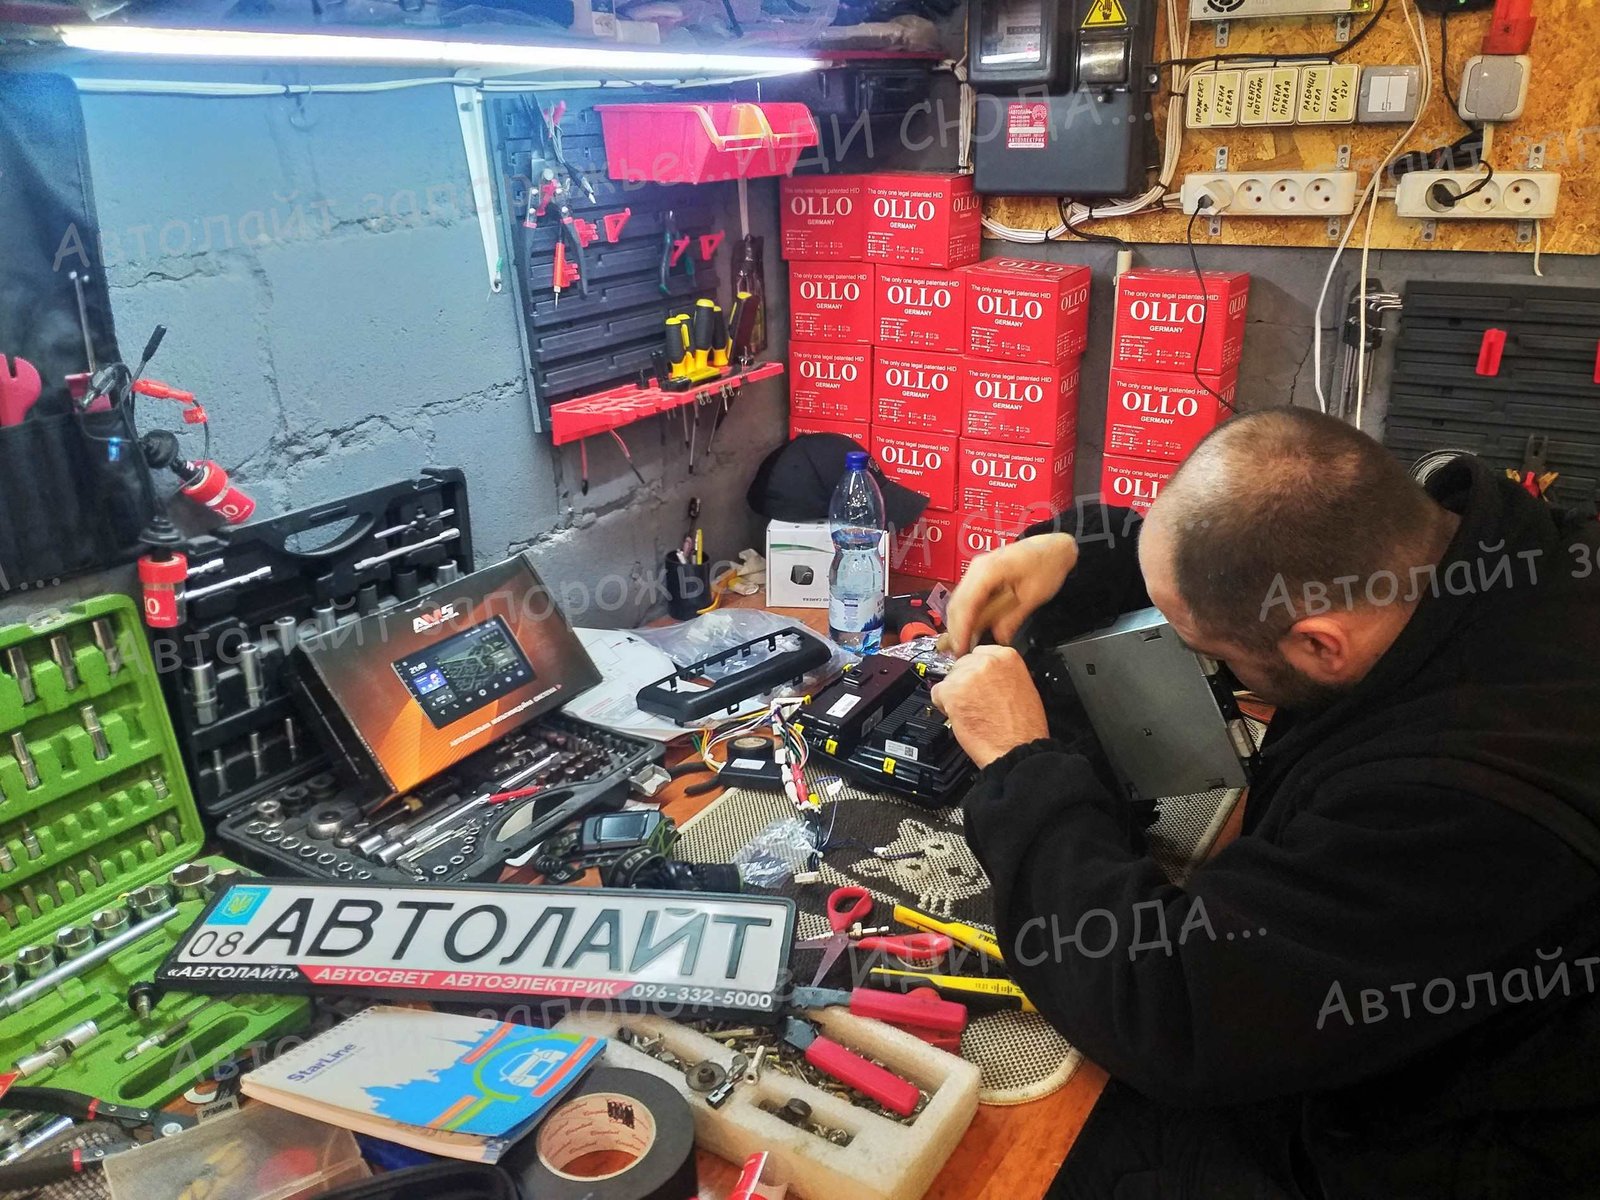 Услуги автоэлектрика в Запорожье. 8 🚗ⒶⓋⓉⓄⓁⒾⒼⓗⓉ🚗 студия "Автолайт" Качественный автосвет в Запорожье